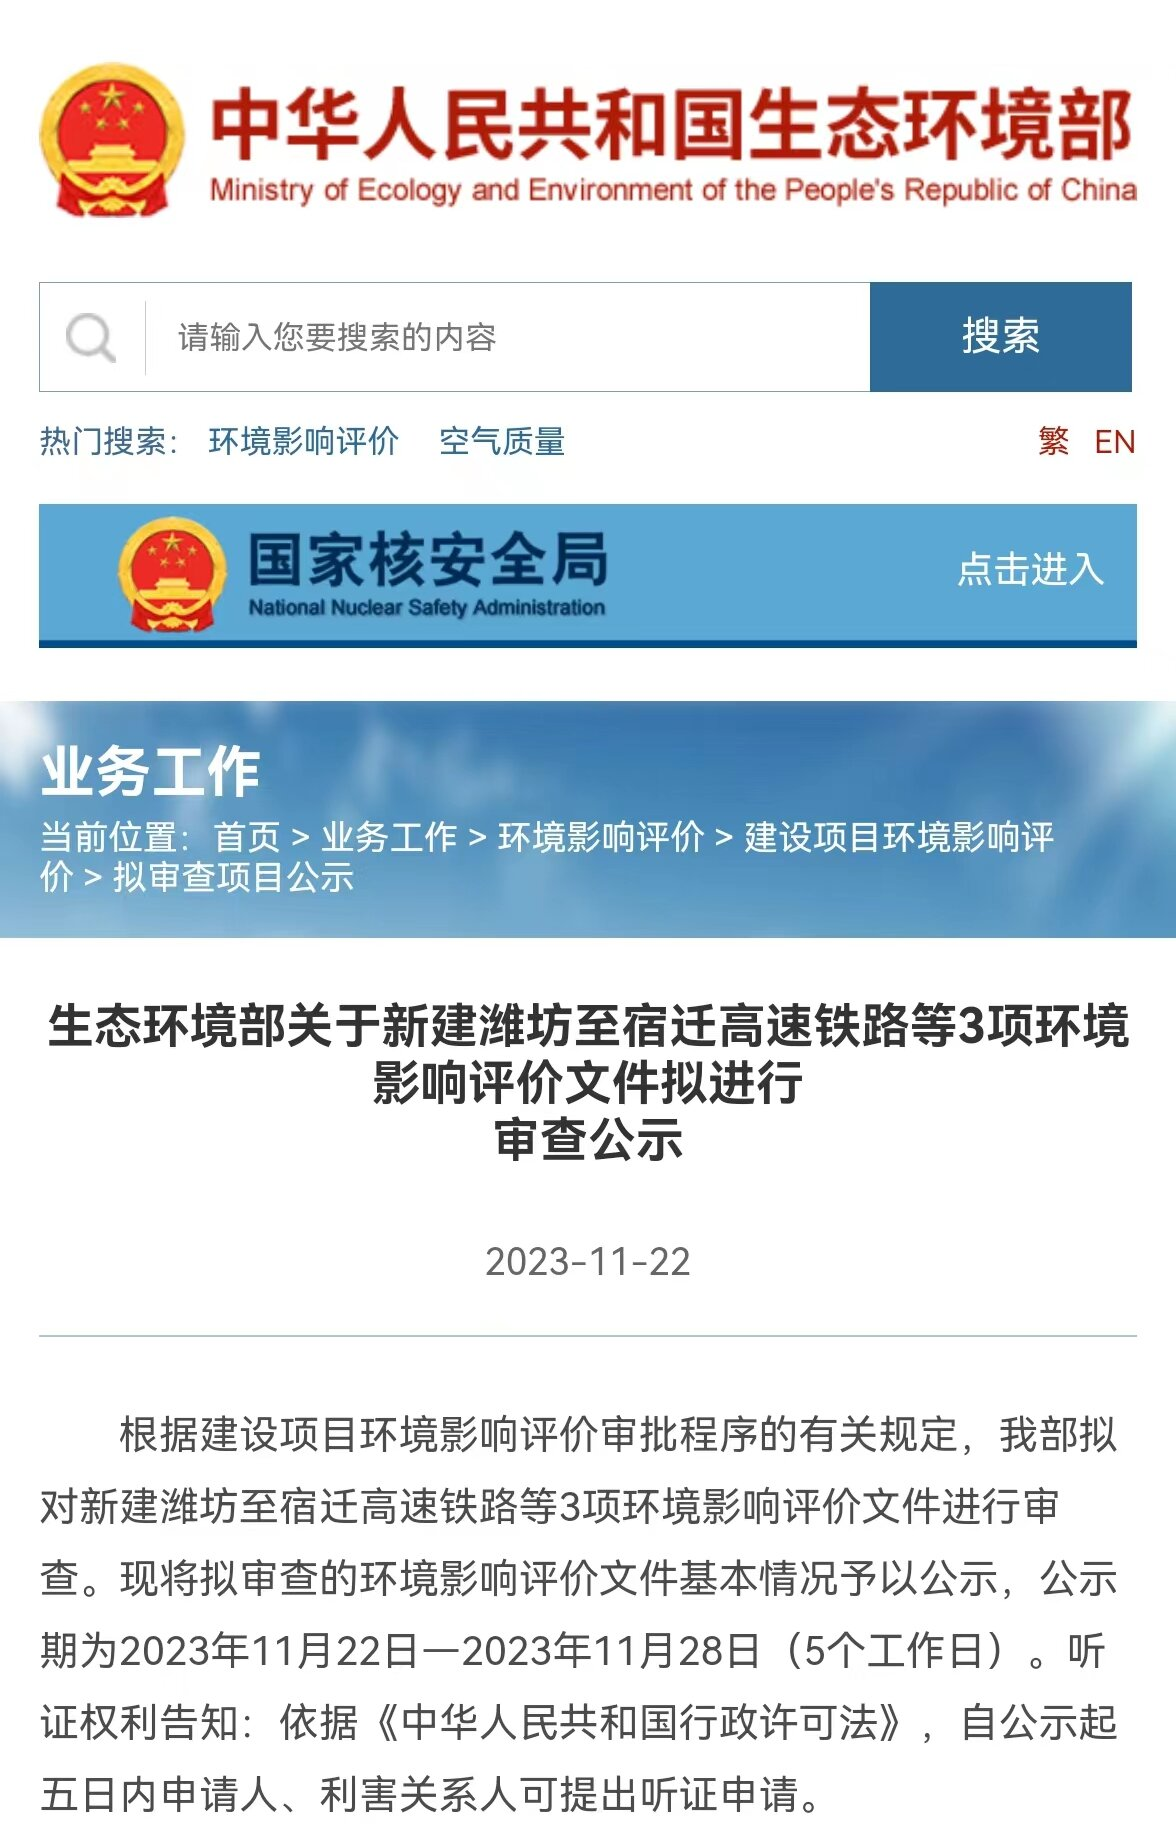 京沪高铁二线潍宿高铁环评公示结束，“年底前施工”再进一步